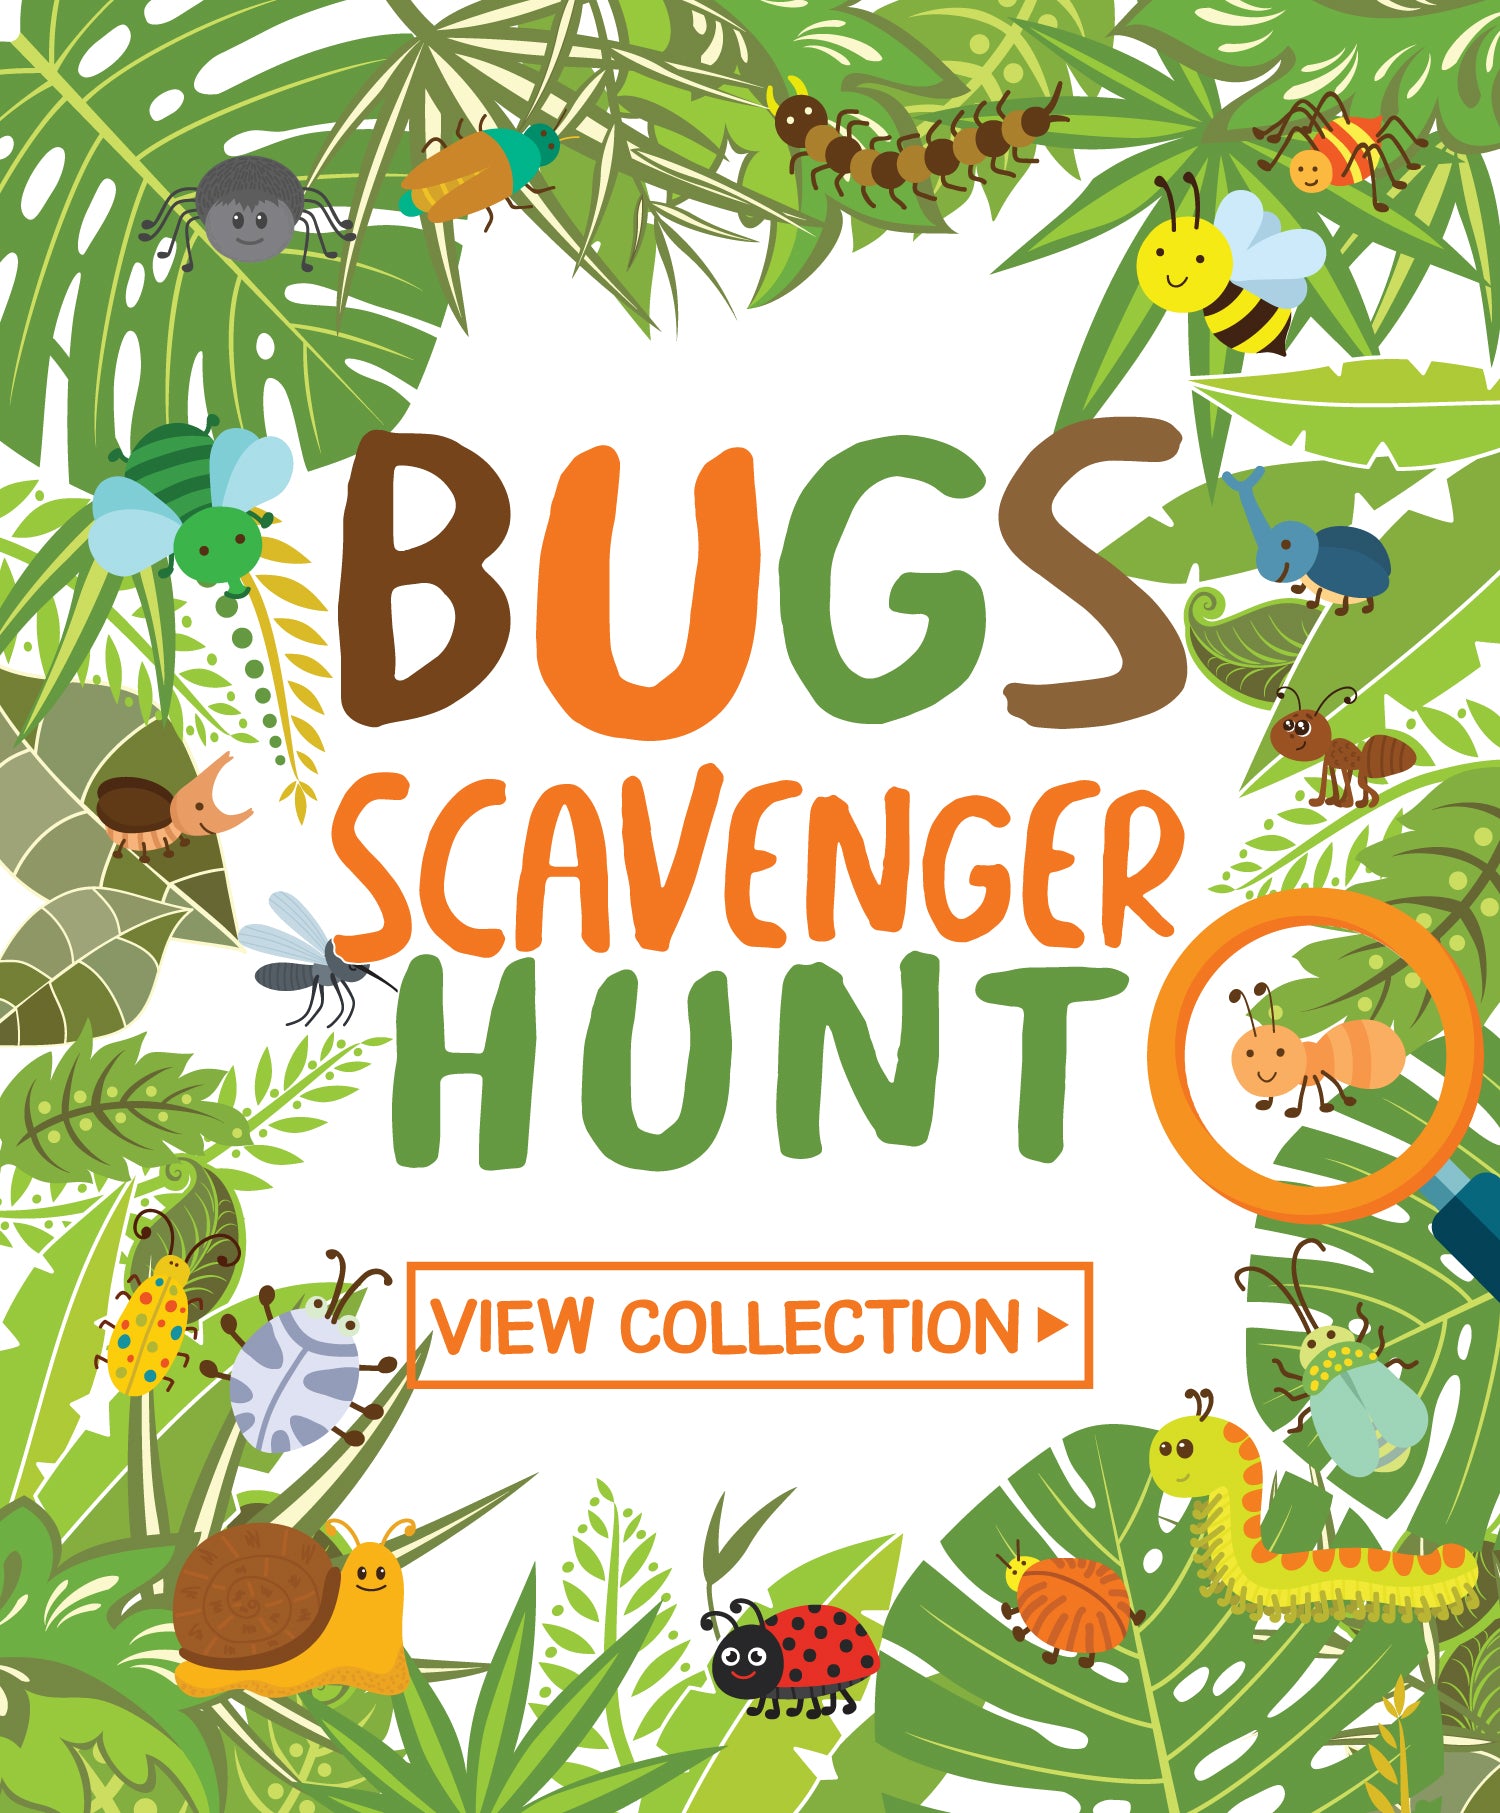 Bugs Scavenger Hunt